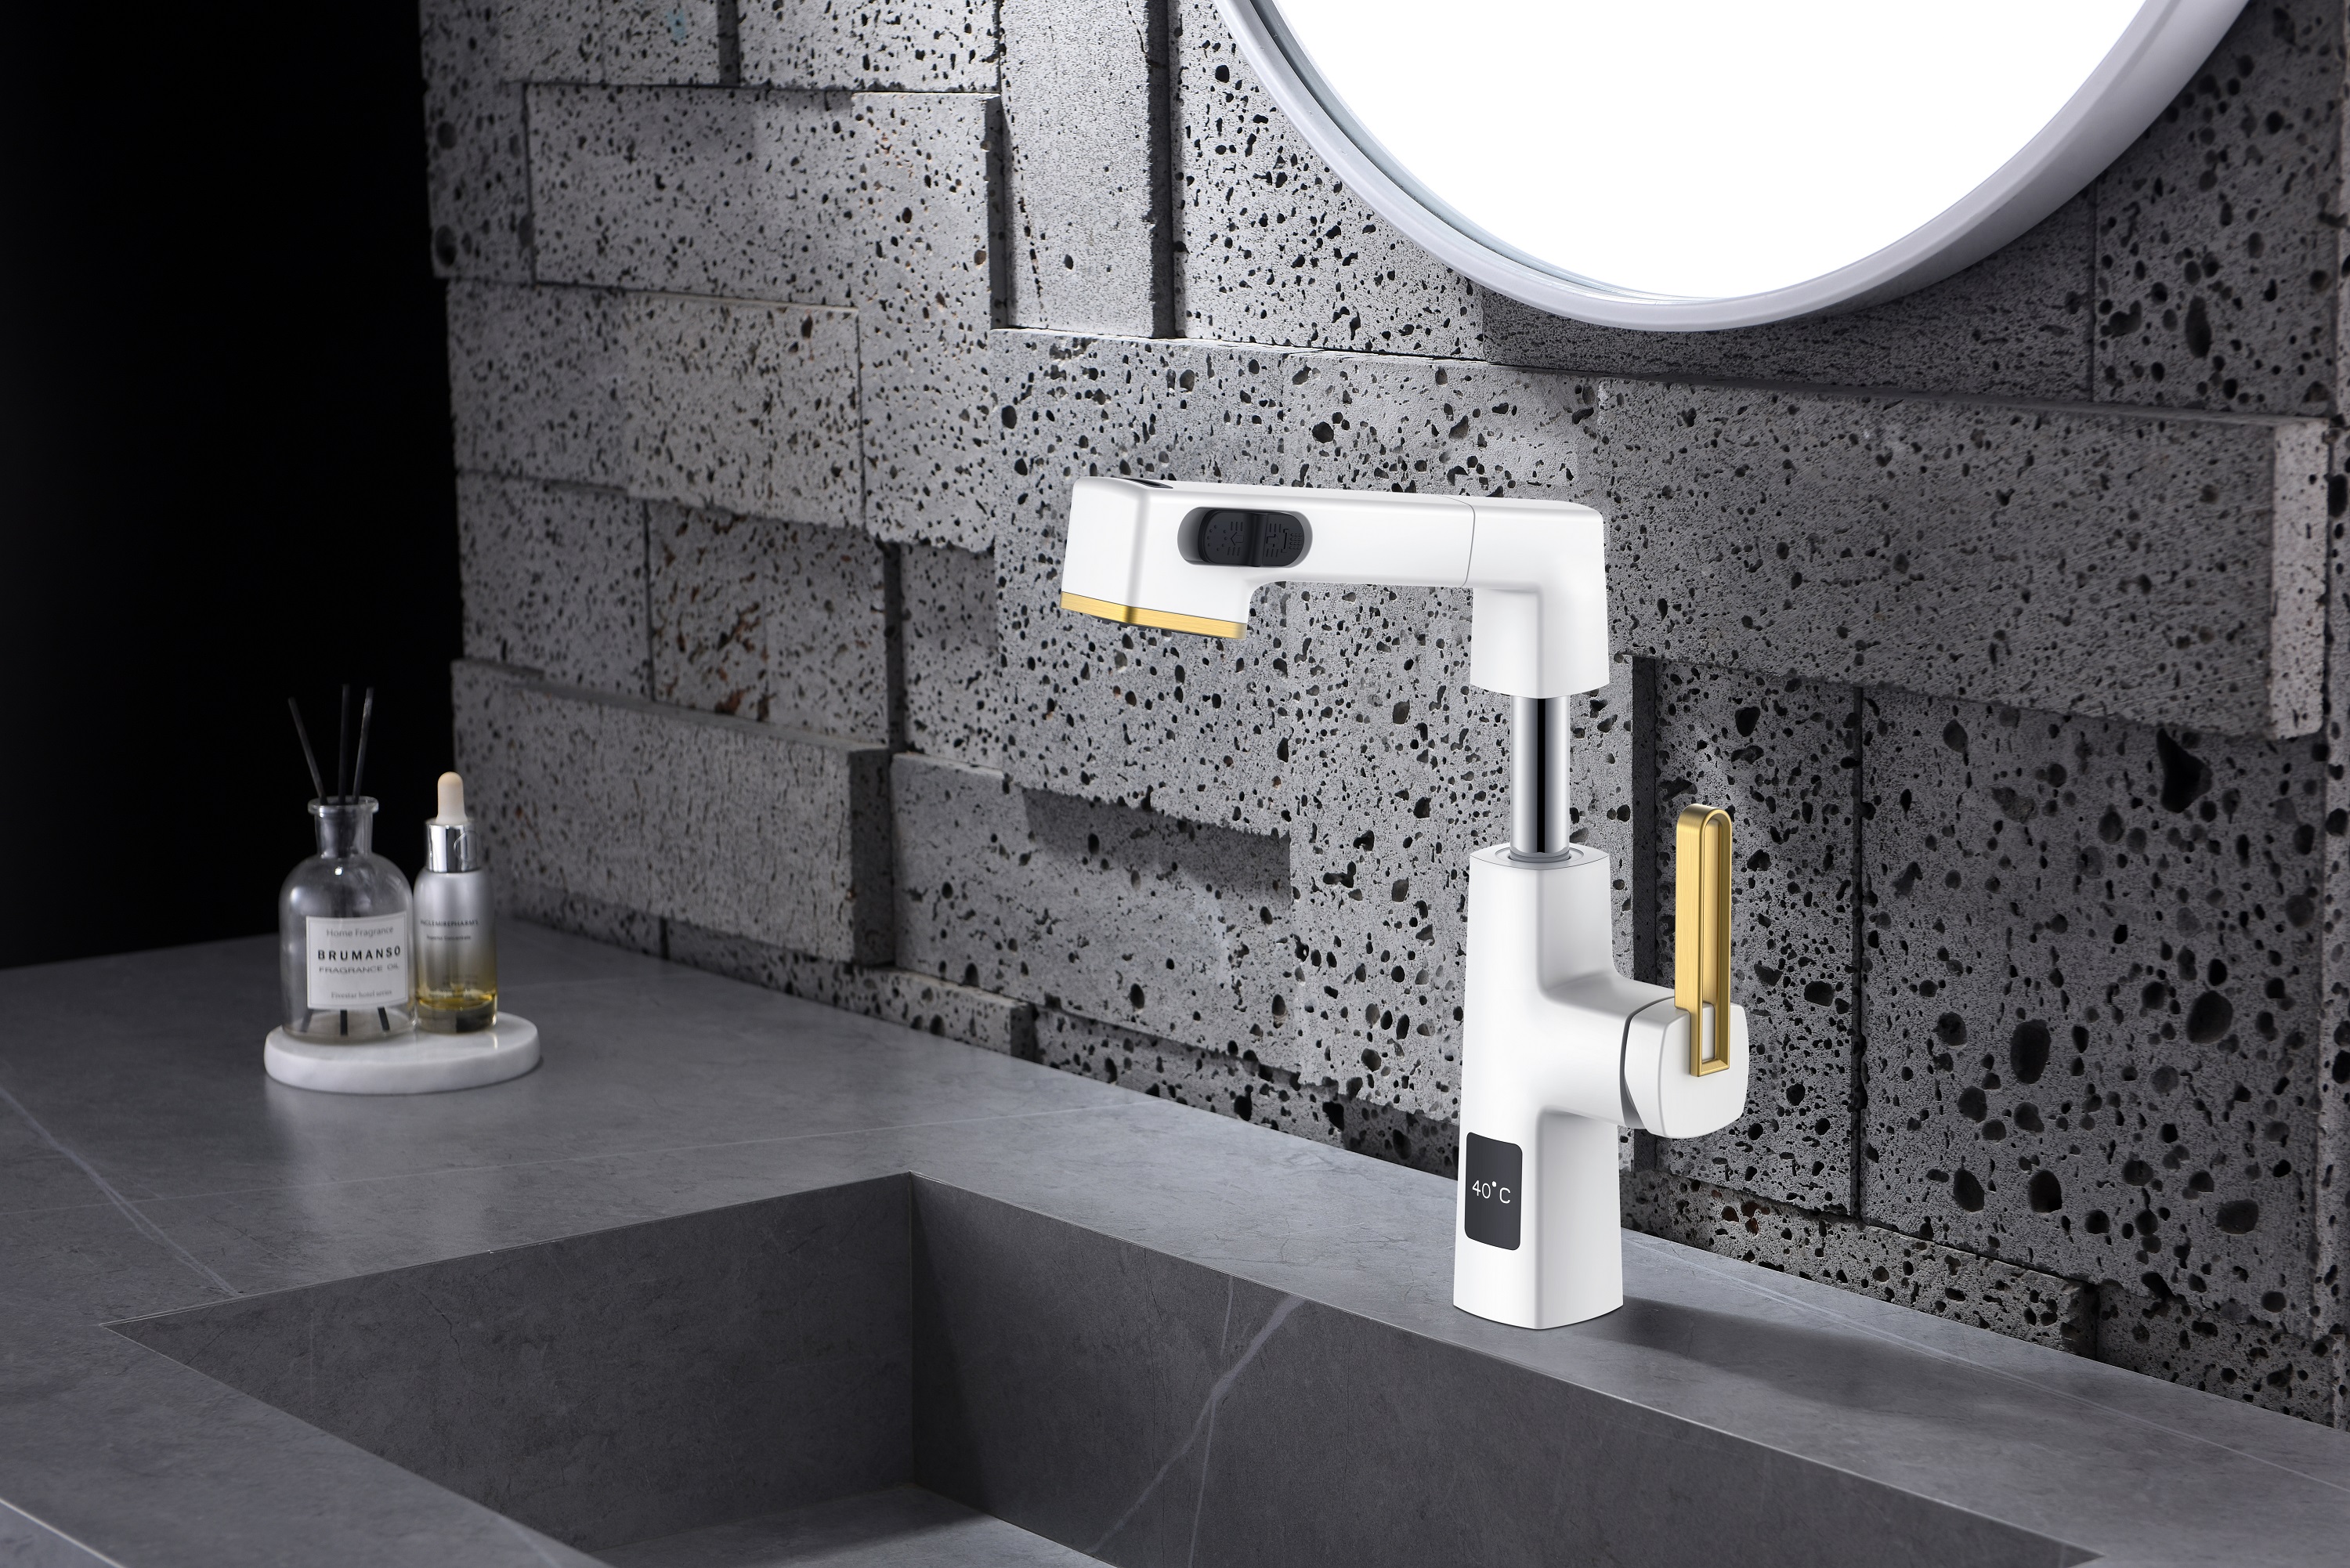  Temperaturanzeige, einzigartiges Design, schwarzer ausziehbarer Badezimmerhahn, höhenverstellbar